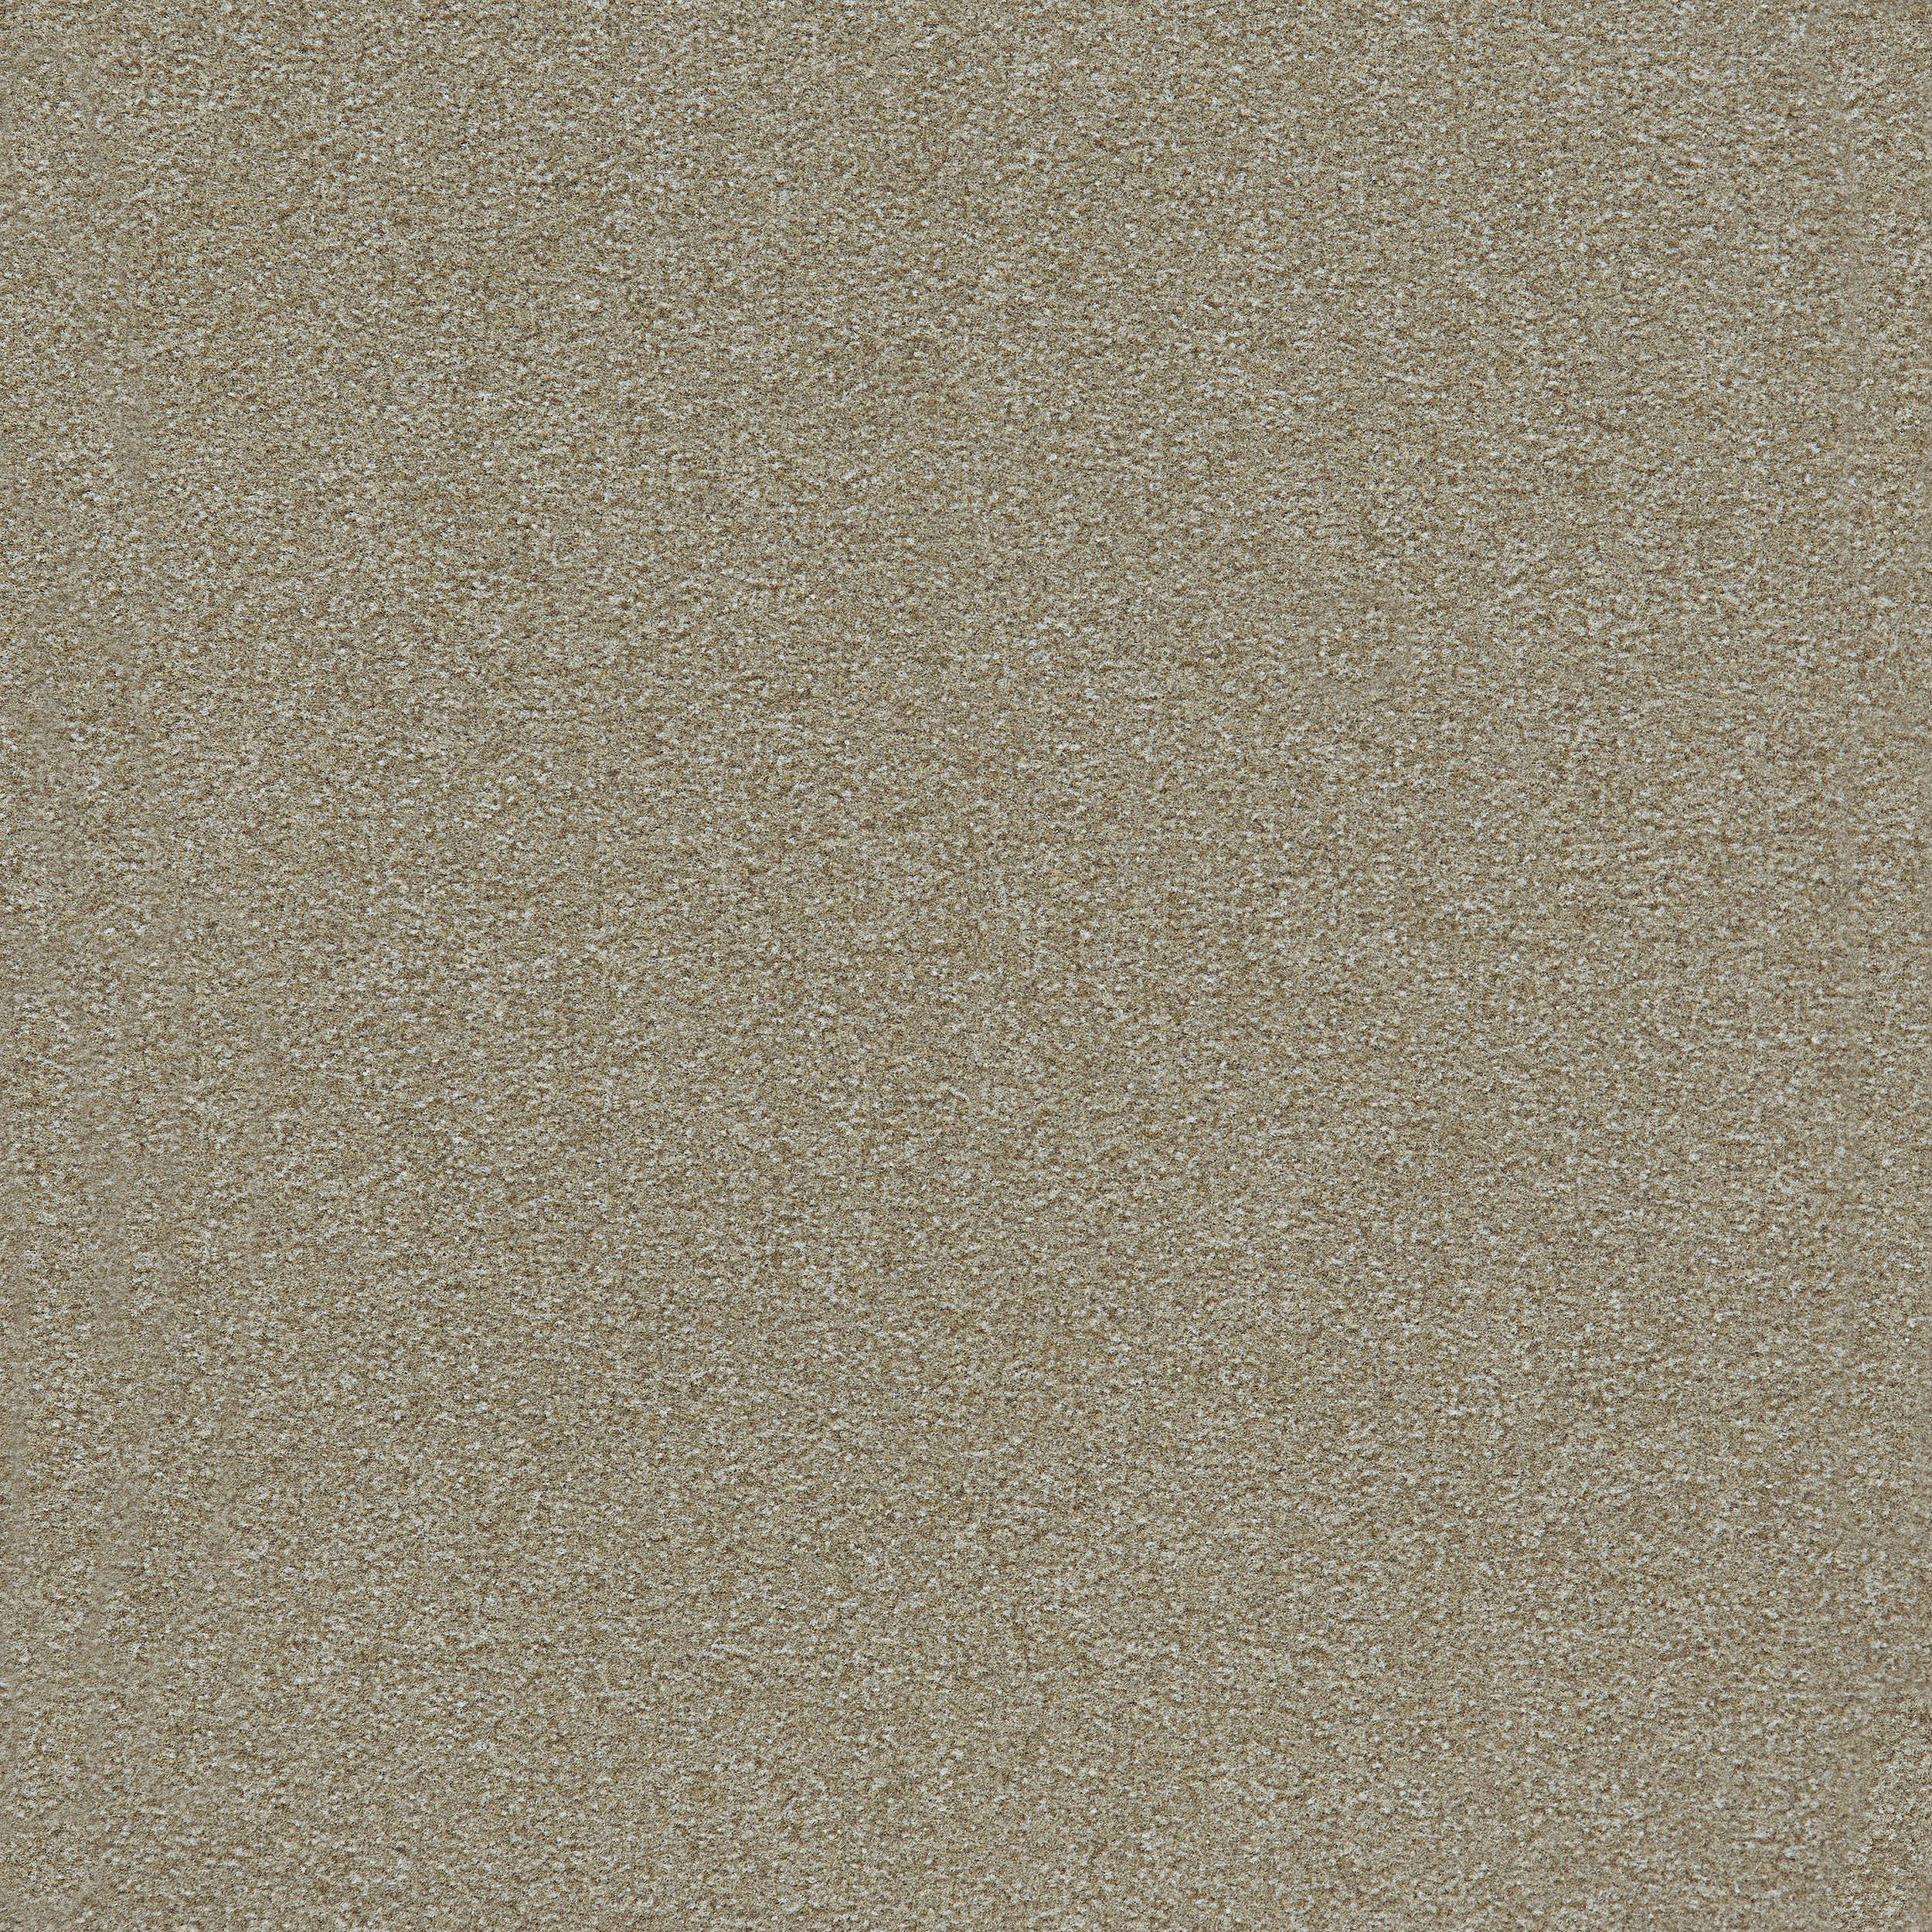 Heuga 725 Carpet Tile In Oyster Bildnummer 8